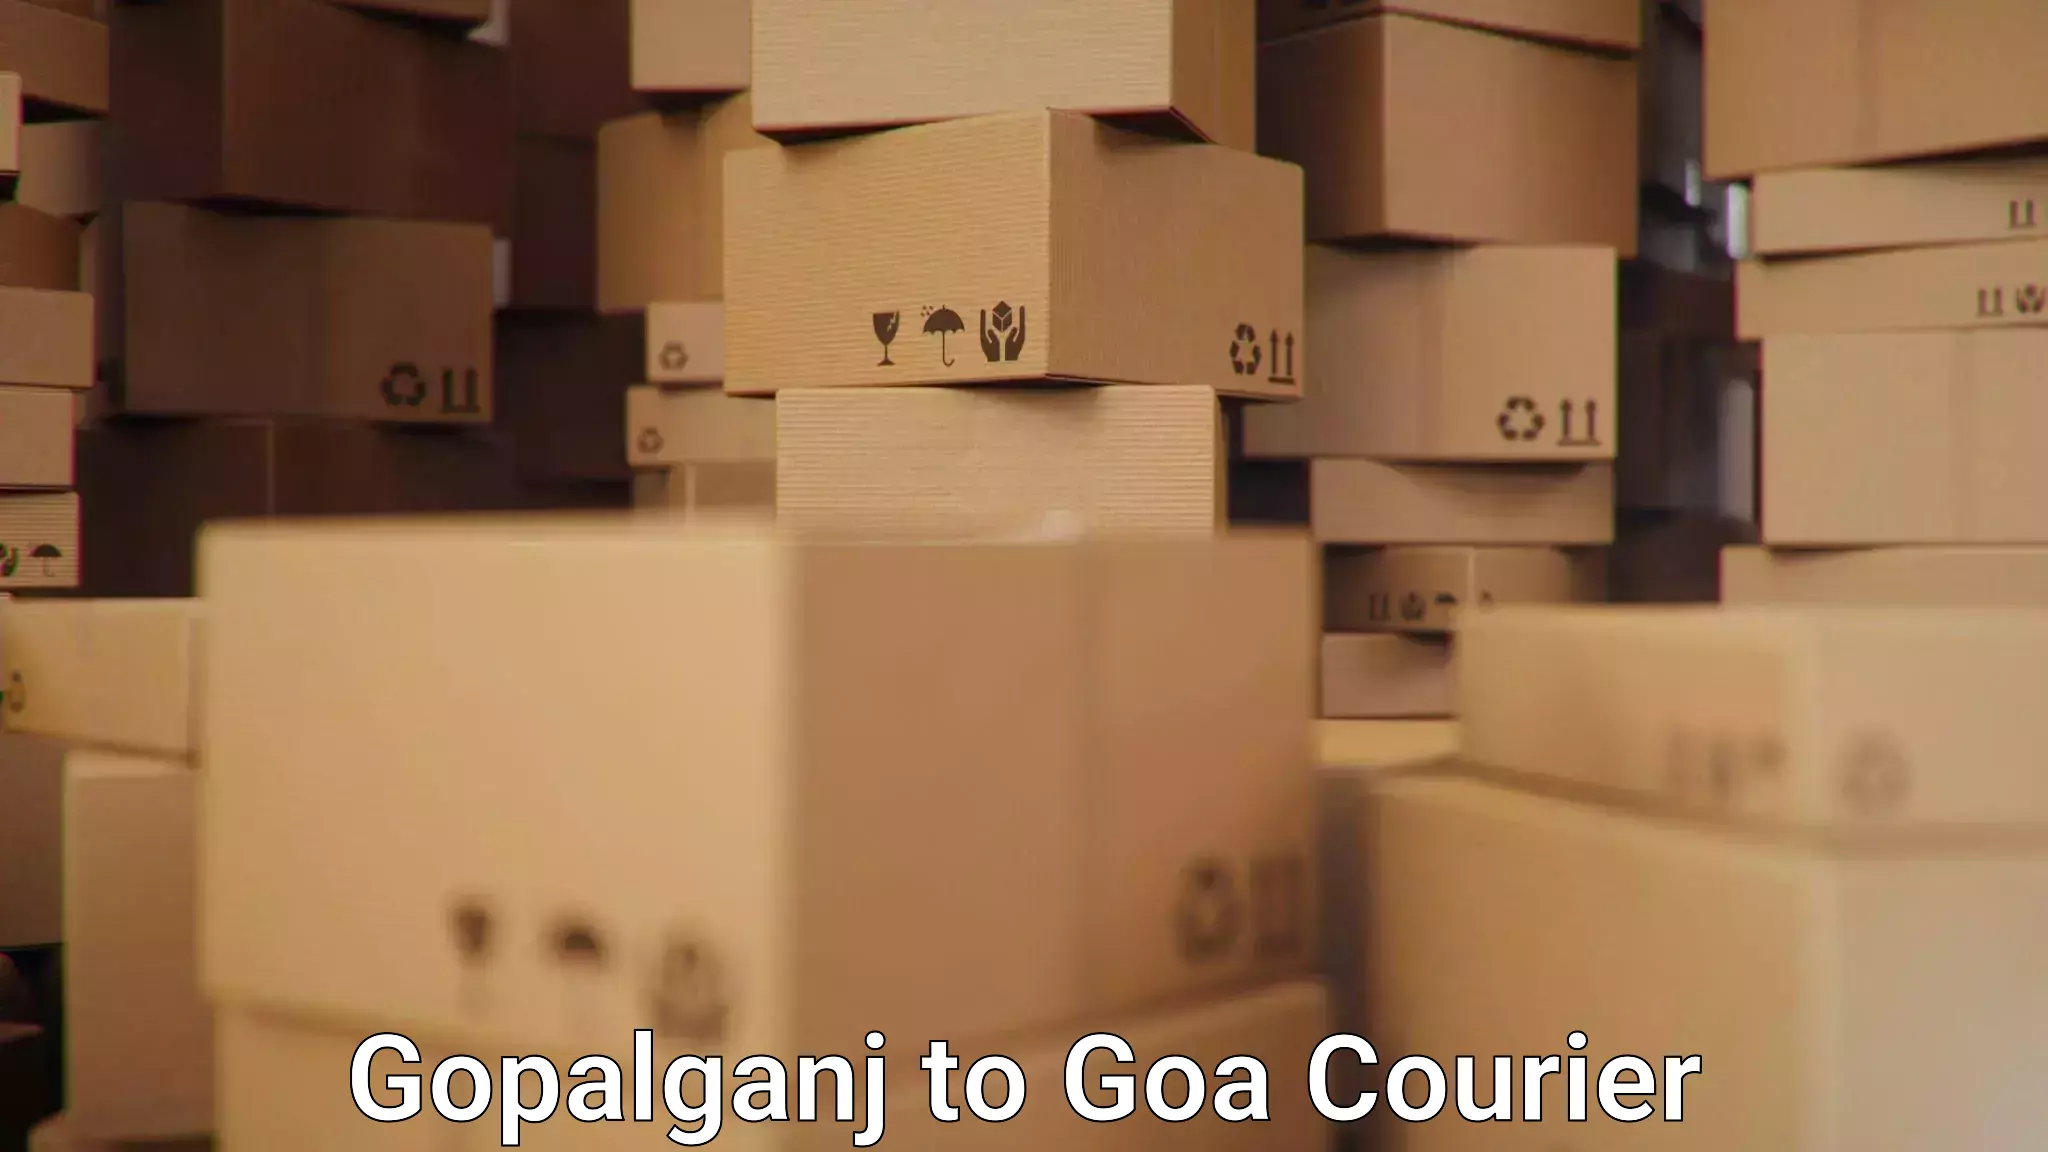 Efficient shipping operations Gopalganj to Panjim